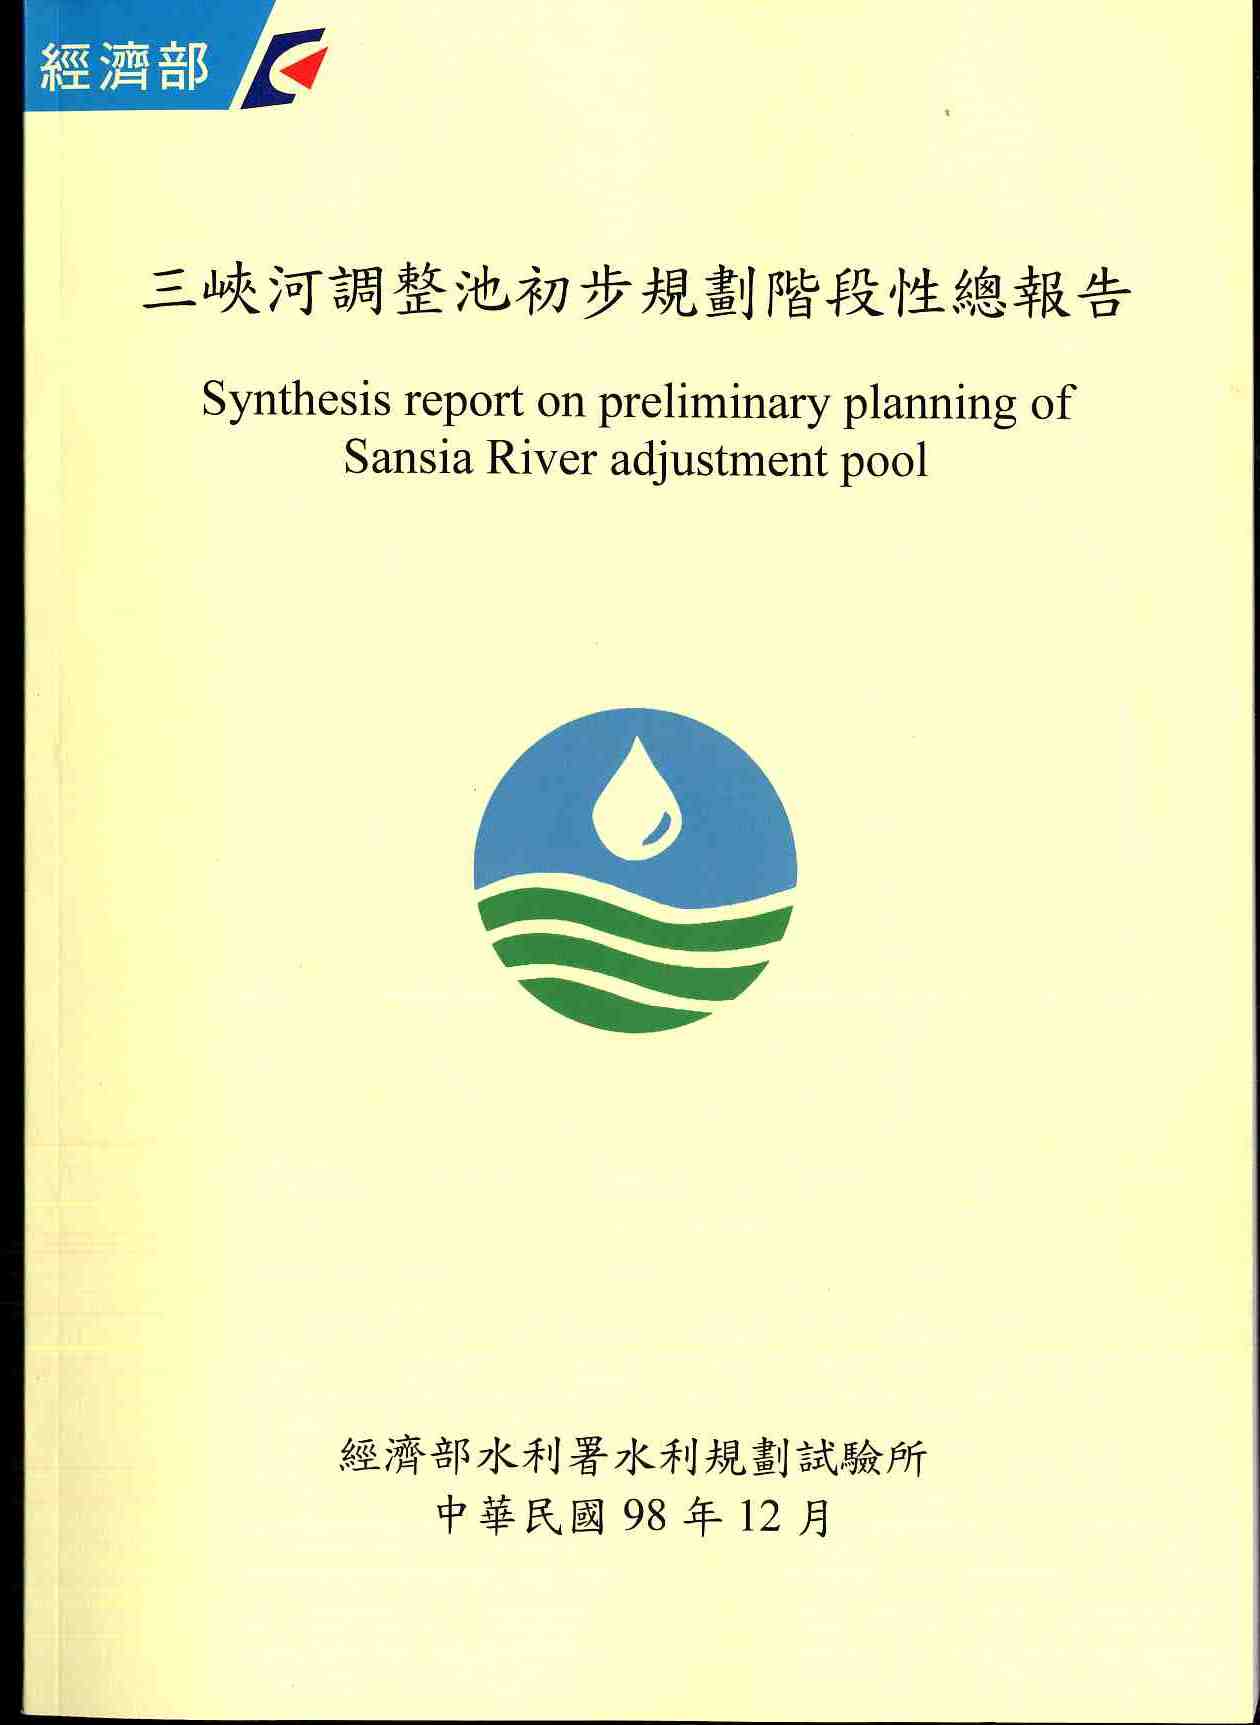 三峽河調整池初步規劃階段性總報告